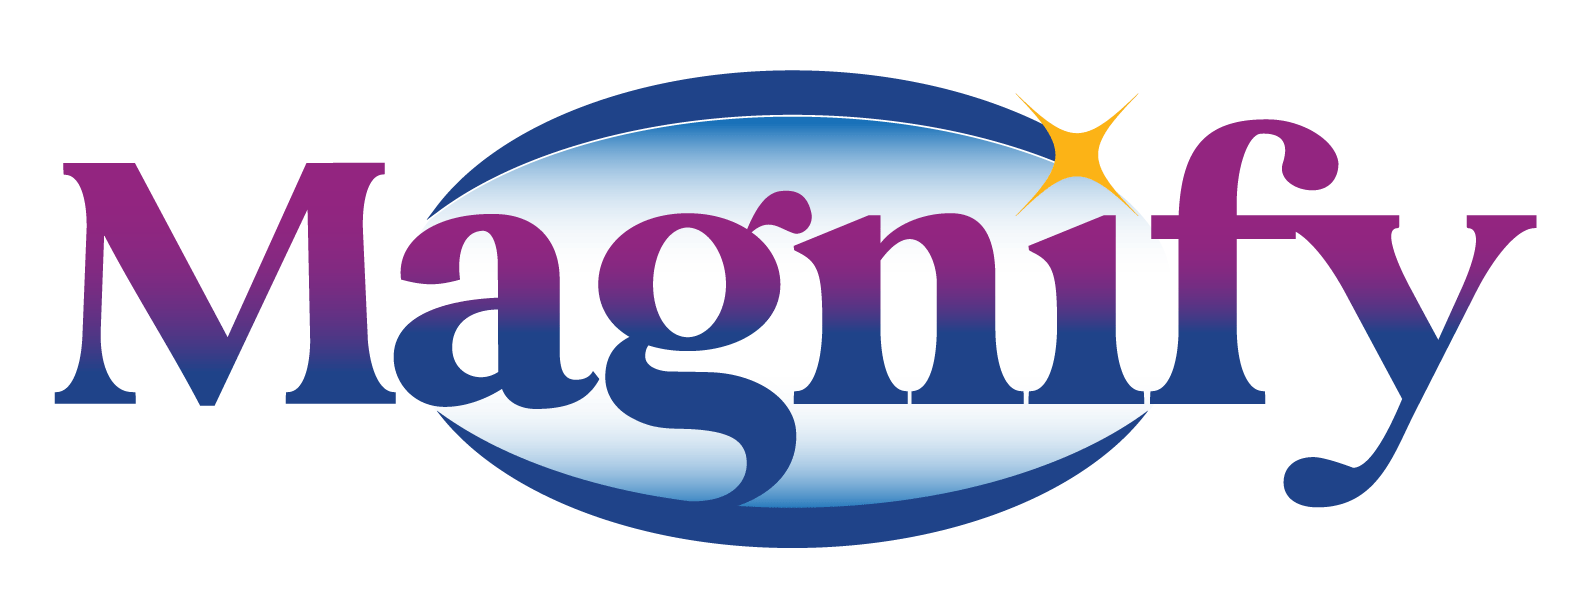 Magnify Logo